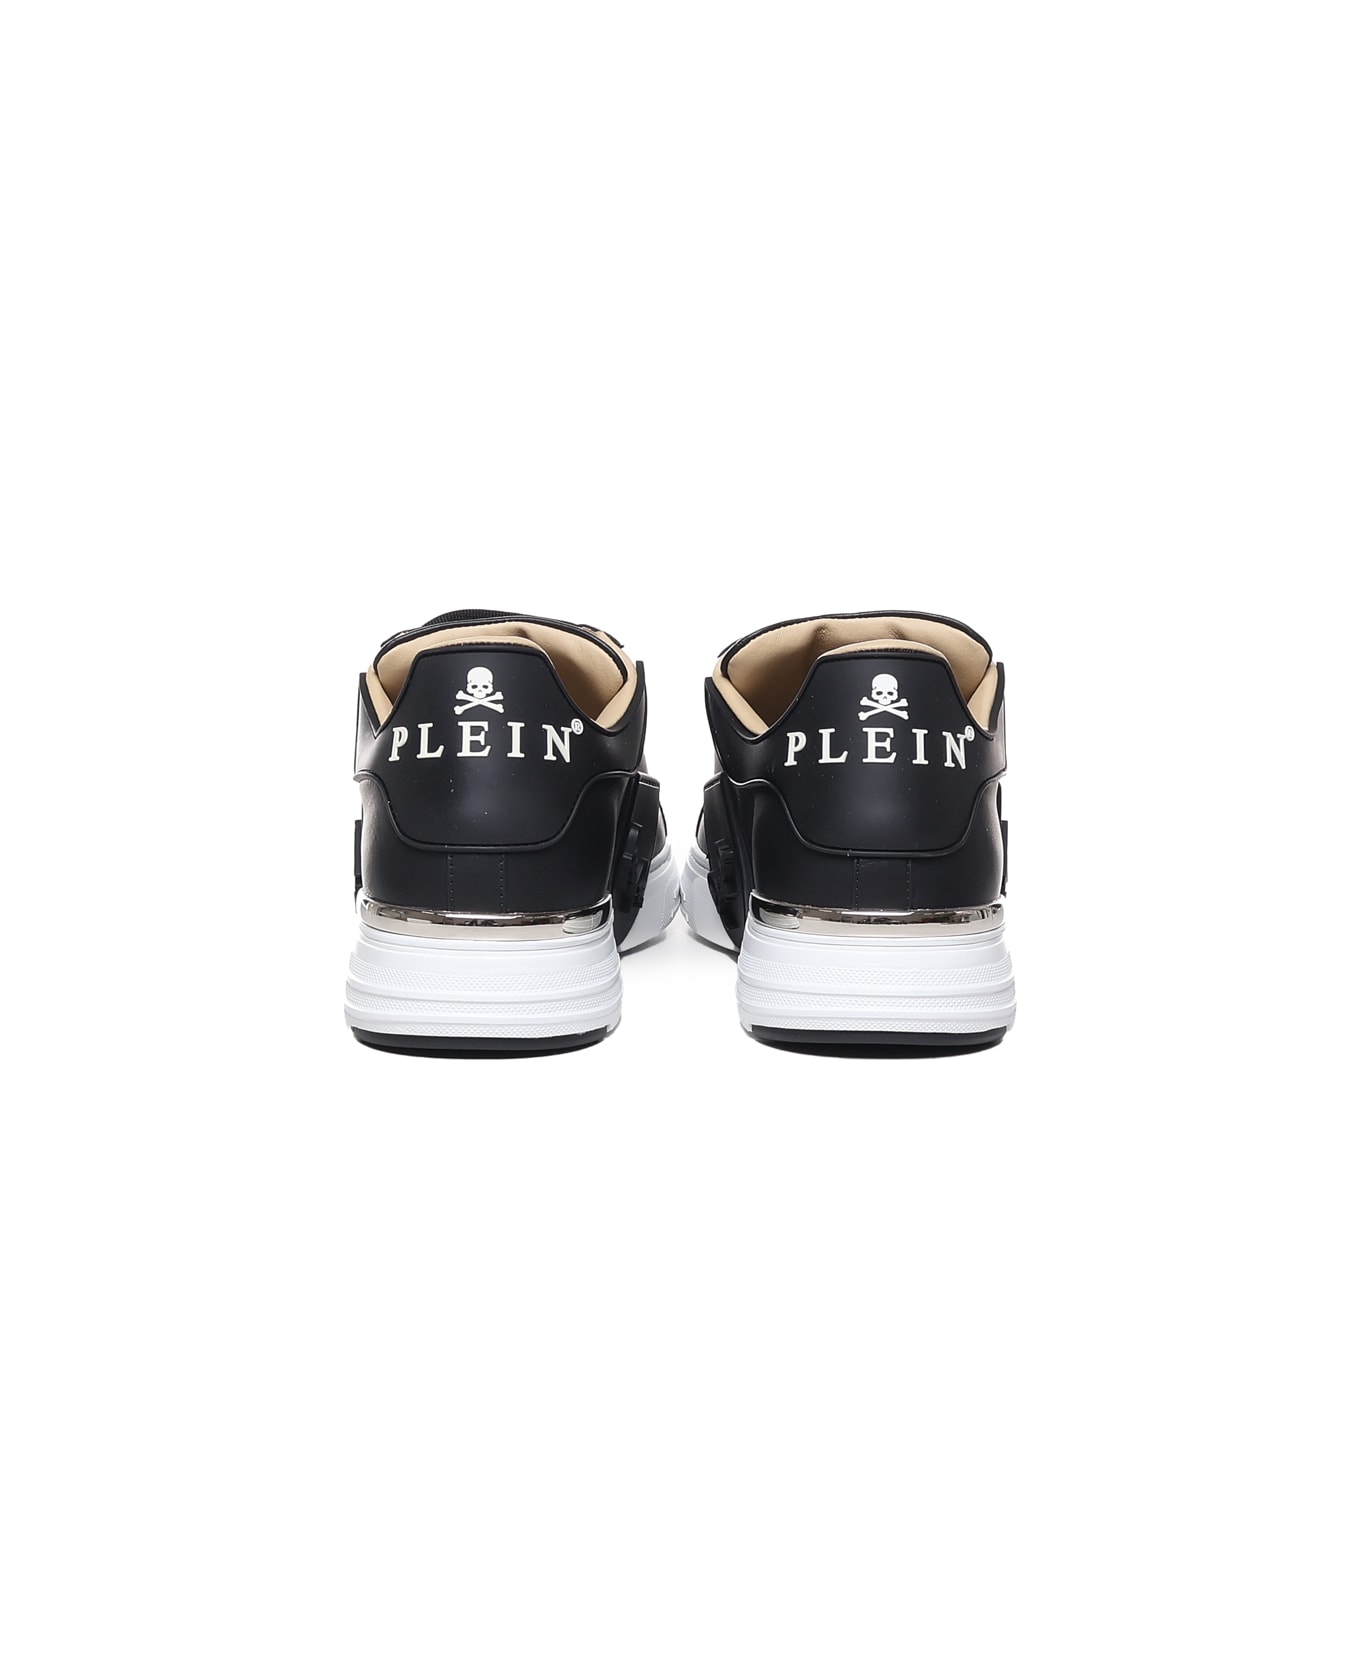 Philipp Plein Phantom Kicks Hexagon Sneakers - Black / white